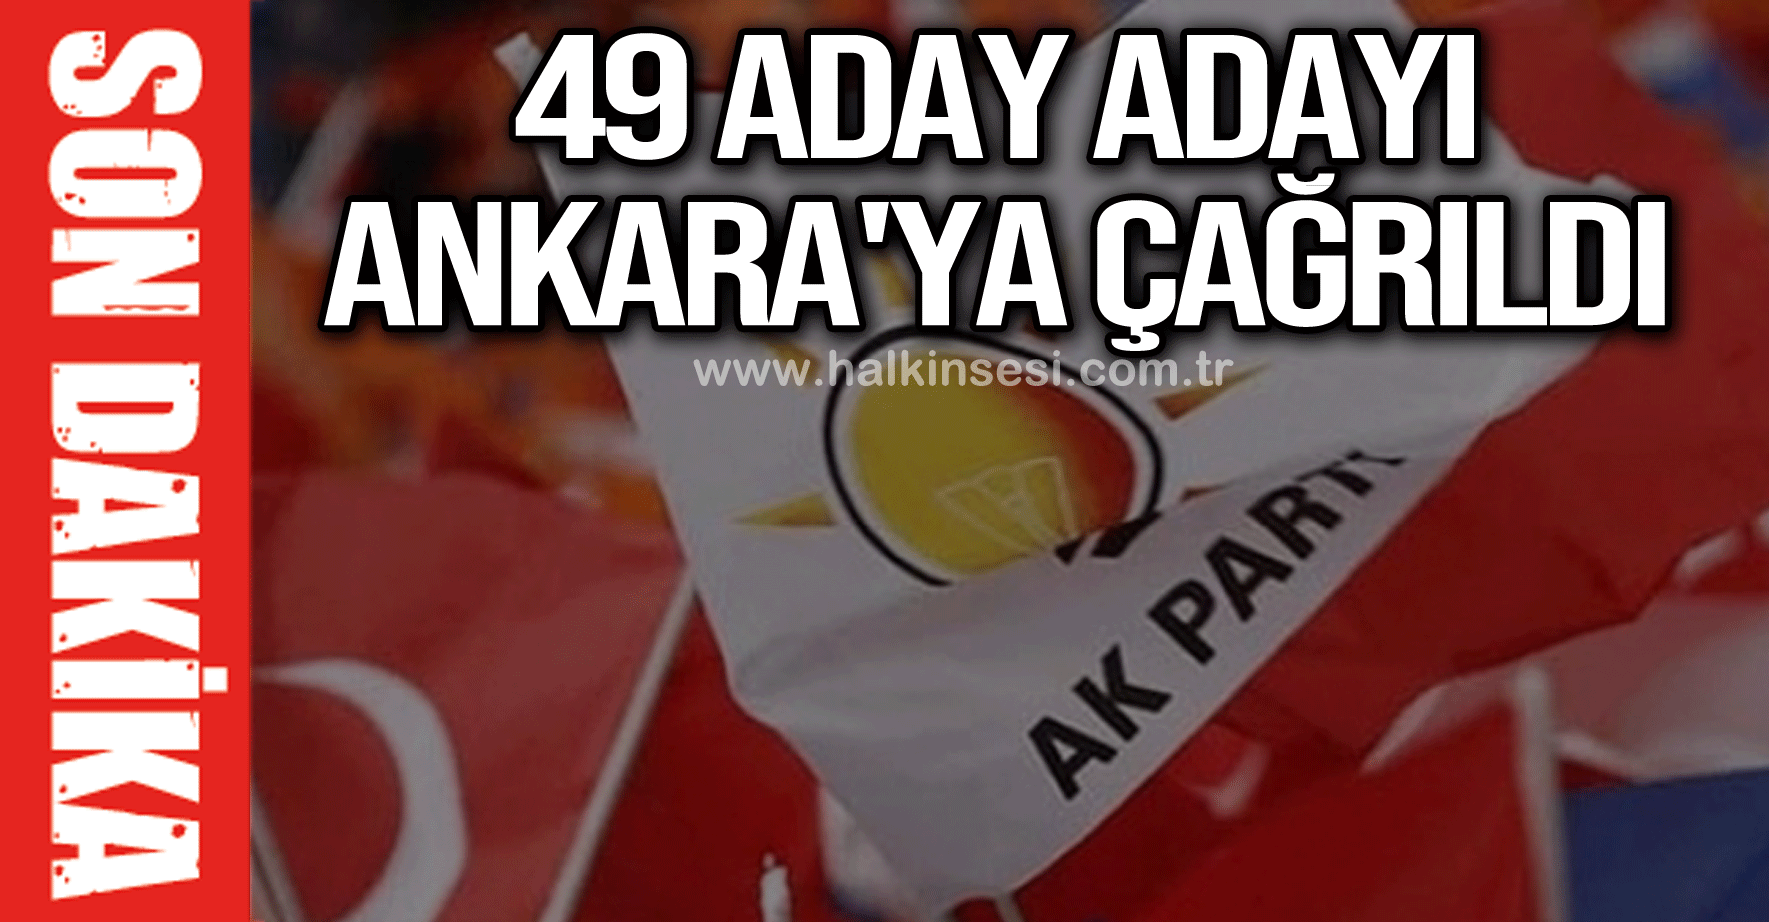 49 aday adayı Ankara'ya çağrıldı